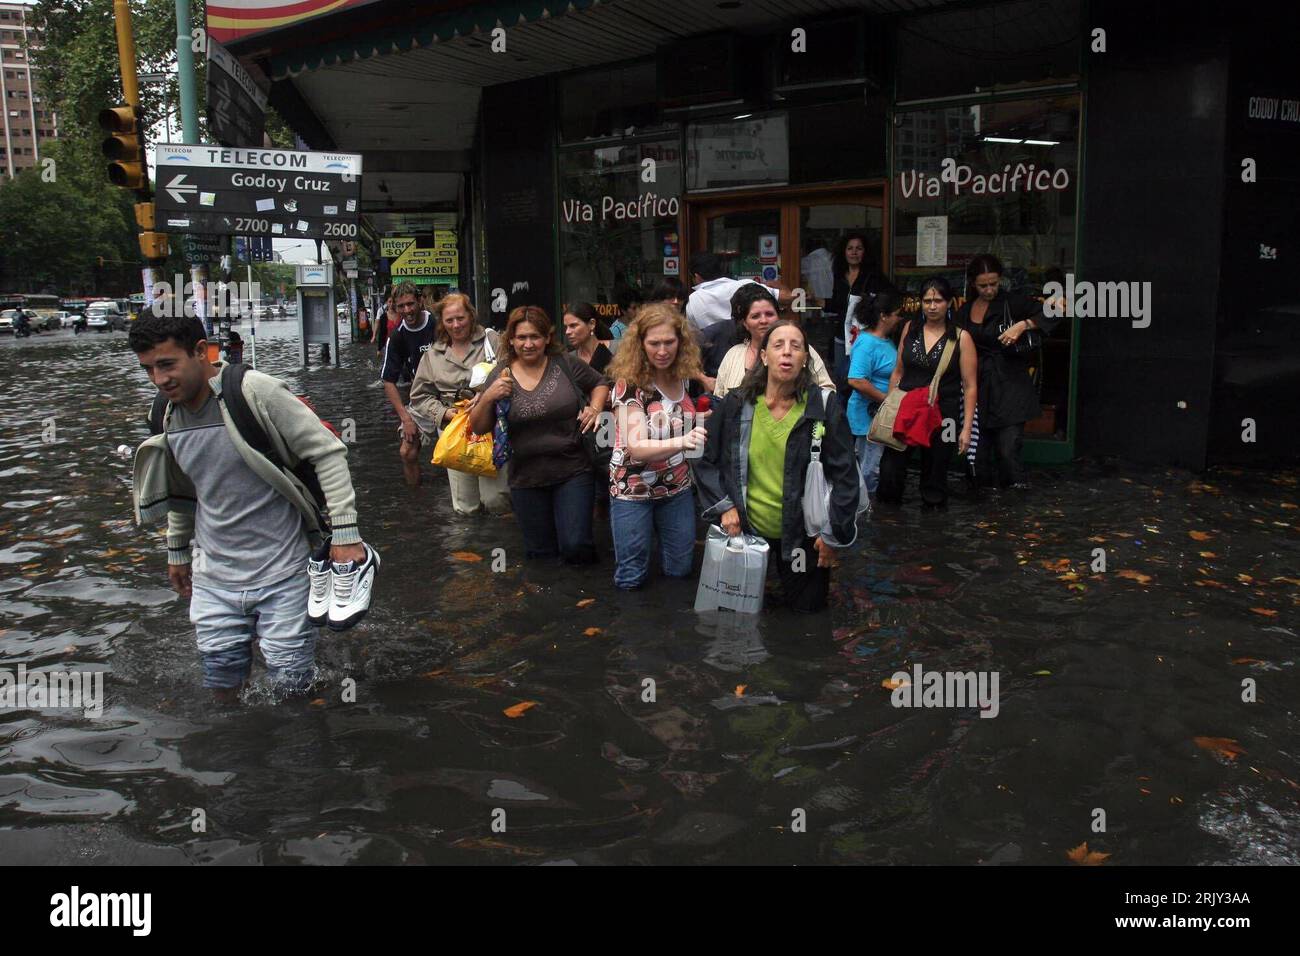 Bildnummer: 52434993  Datum: 27.02.2008  Copyright: imago/Xinhua Überschwemmung in Buenos Aires - Einheimische stehen an einer überschwemmten Straße - PUBLICATIONxNOTxINxCHN, Personen; 2008, Buenos Aires, Argentinien, Katastrophe, Naturkatastrophe, Flut, Überschwemmung, Überschwemmungen, Hochwasser, Flutkatastrophe, Hochwasserkatastrophe, Unwetter, Mann, Frau; , quer, Kbdig, Gruppenbild,  , Wetter, Südamerika Stock Photo